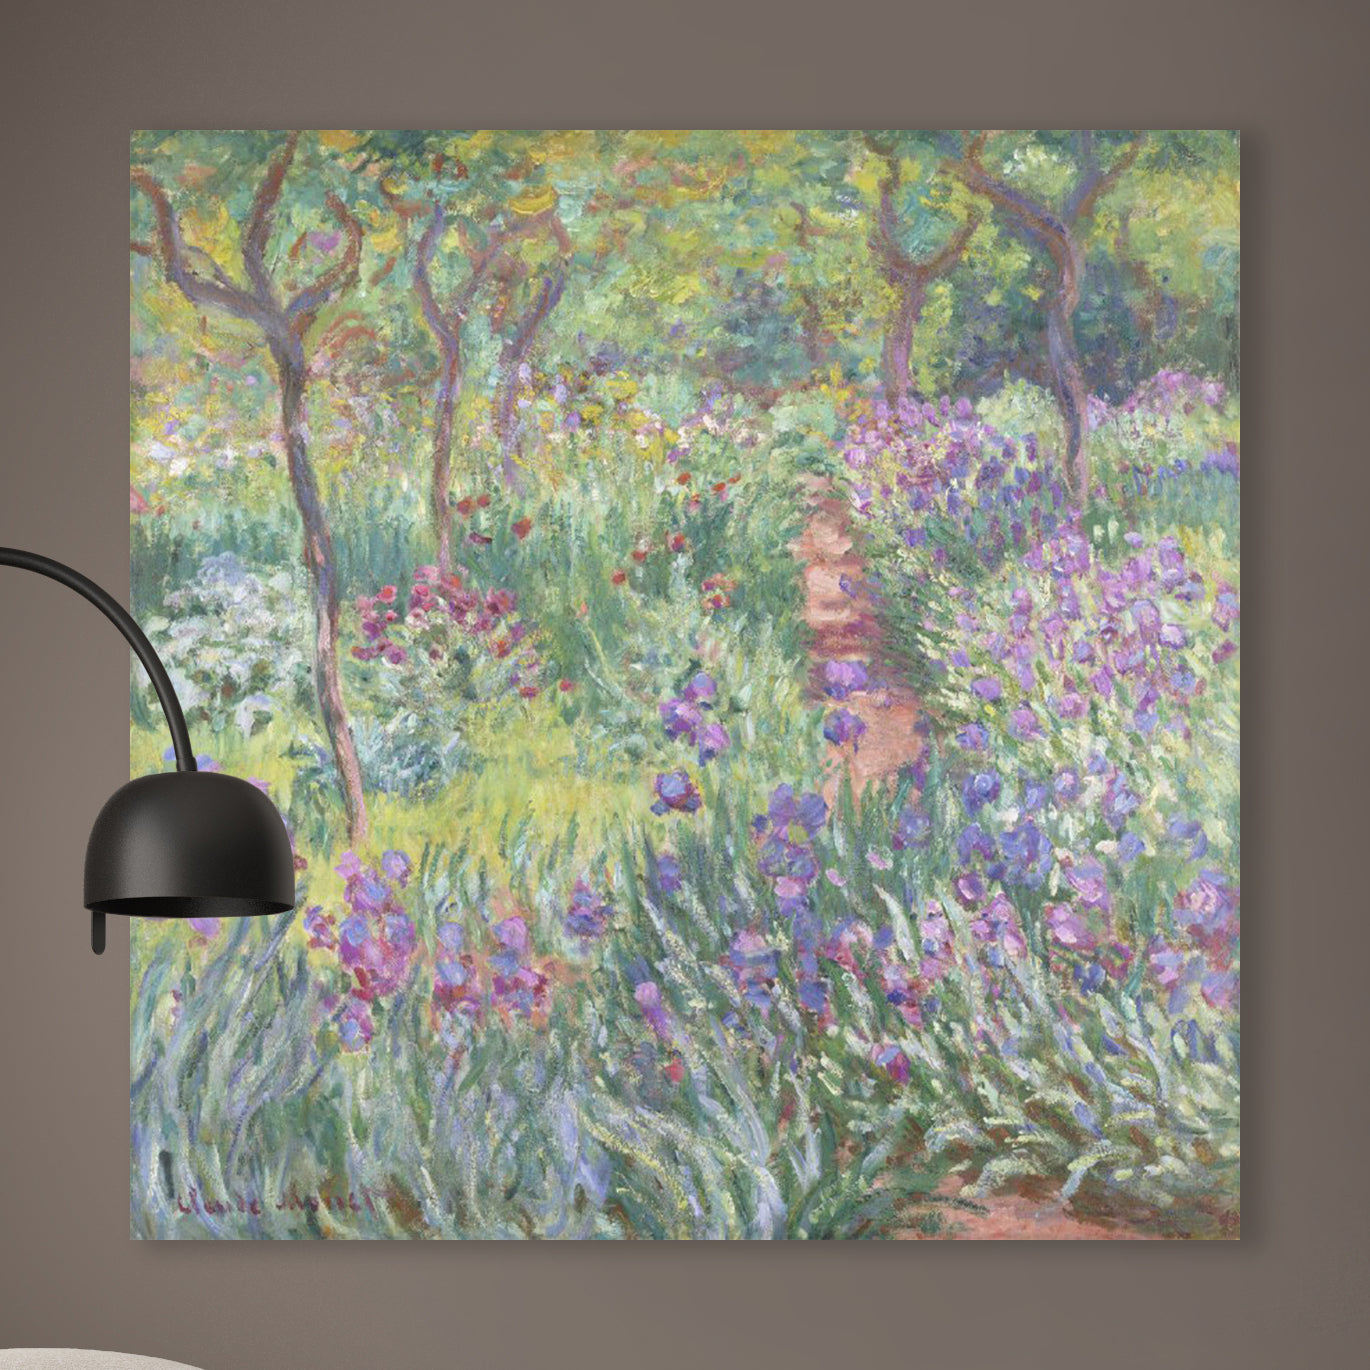 De tuin van de kunstenaar in Giverny - Claude Monet